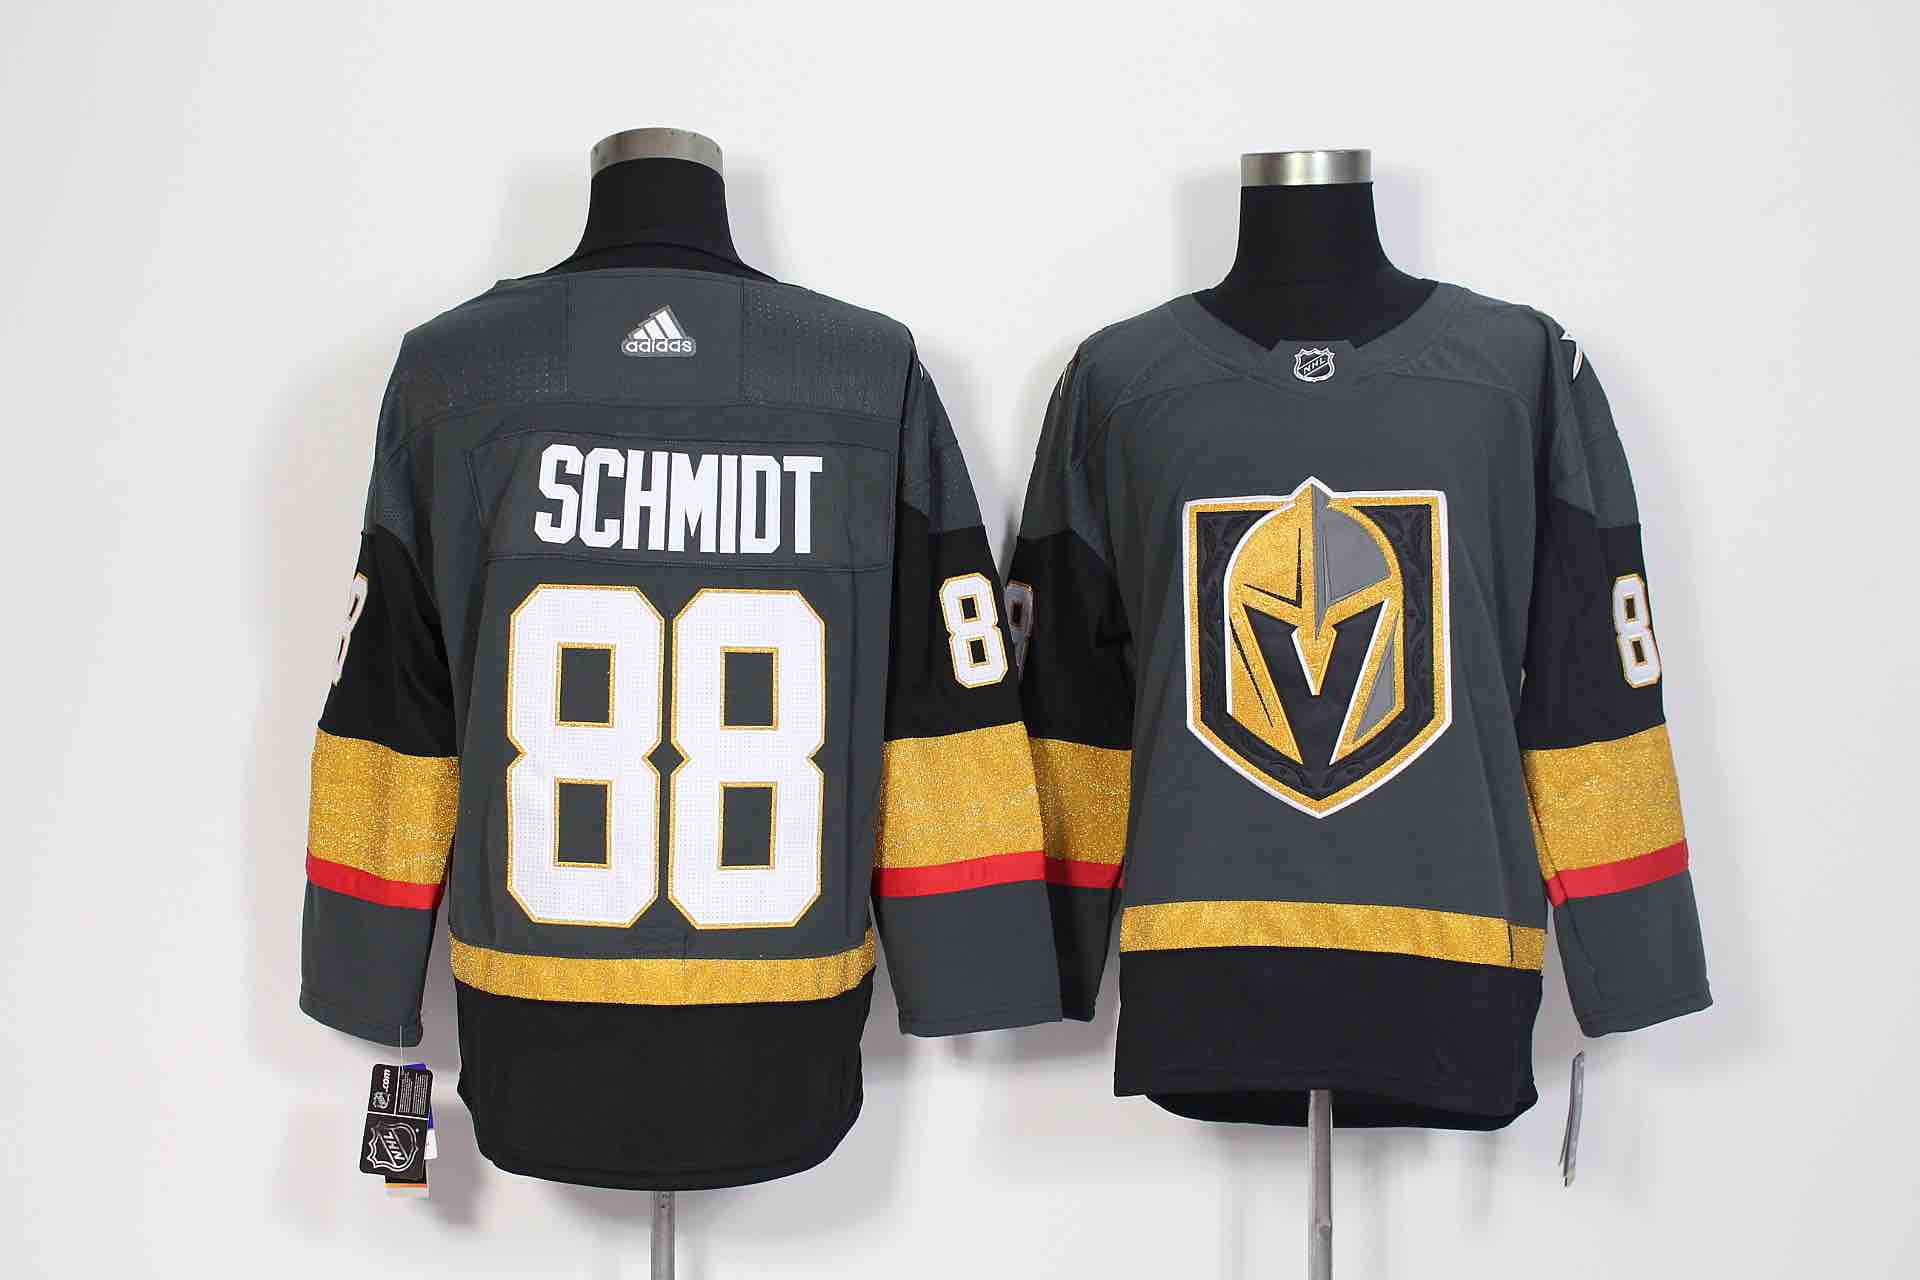 Adidas Mens Vegas Golden Knights #88 Schmidt Hockey Jersey